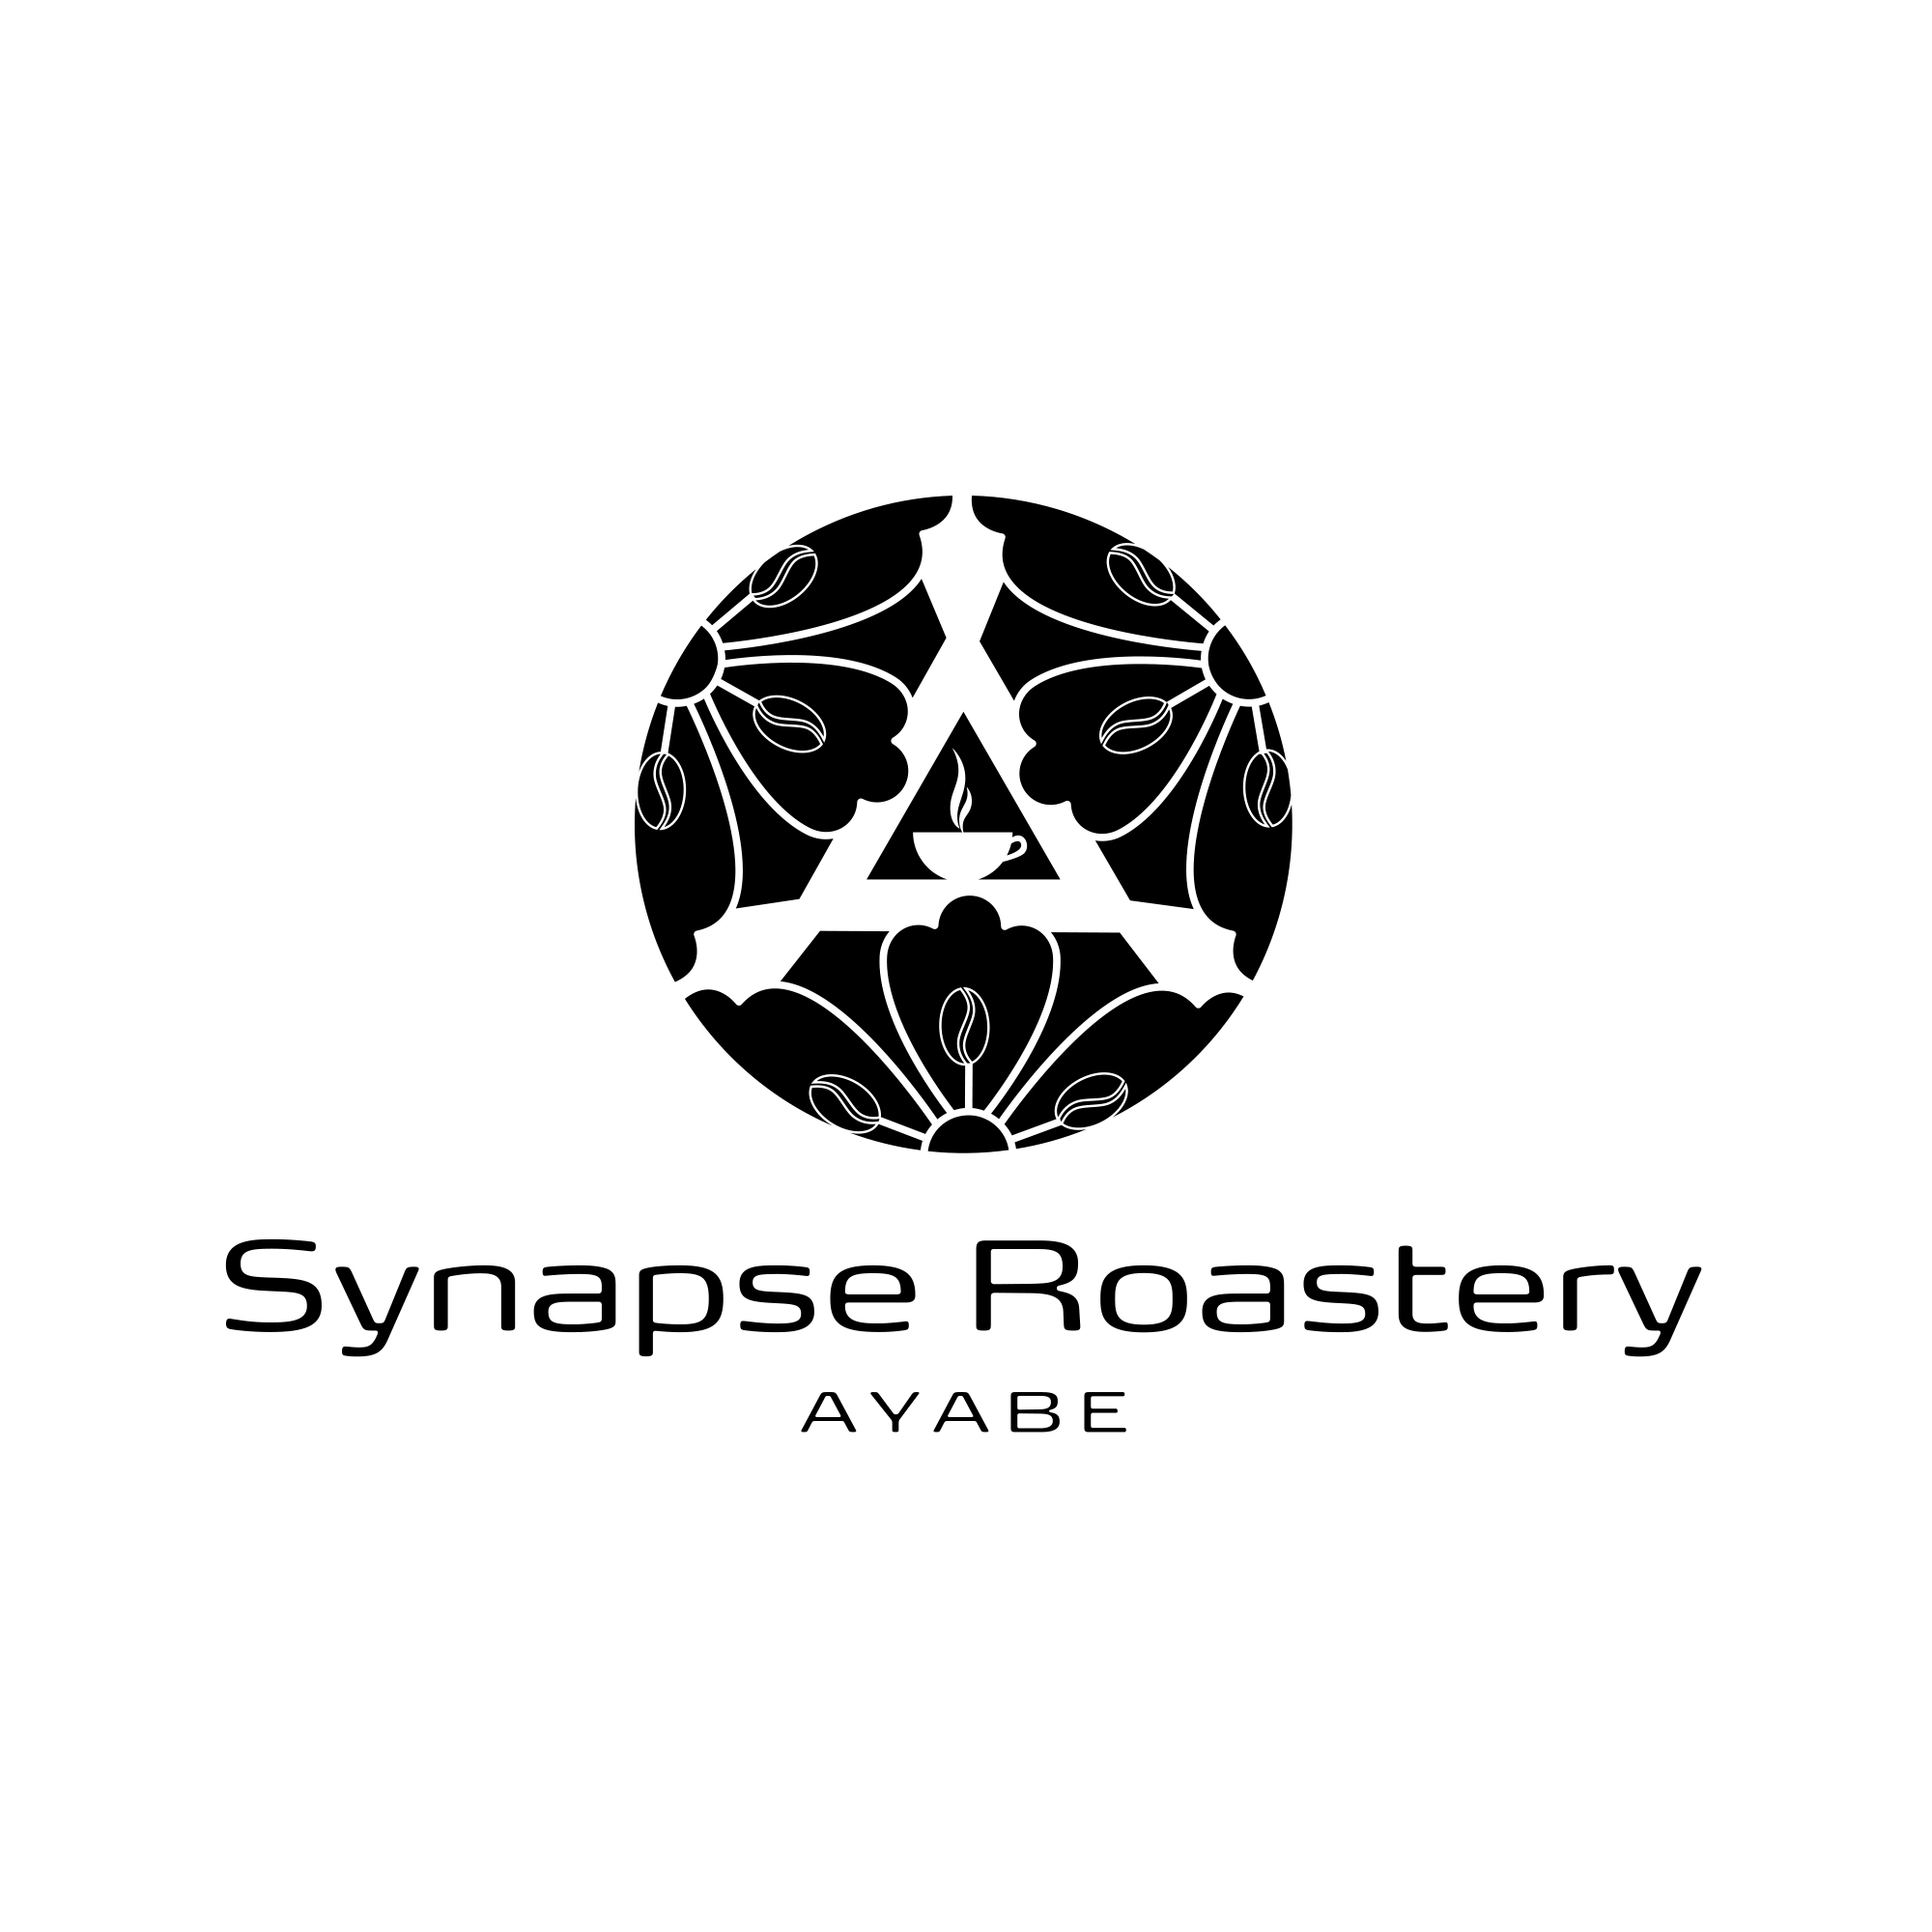 Synapse Roastery AYABE